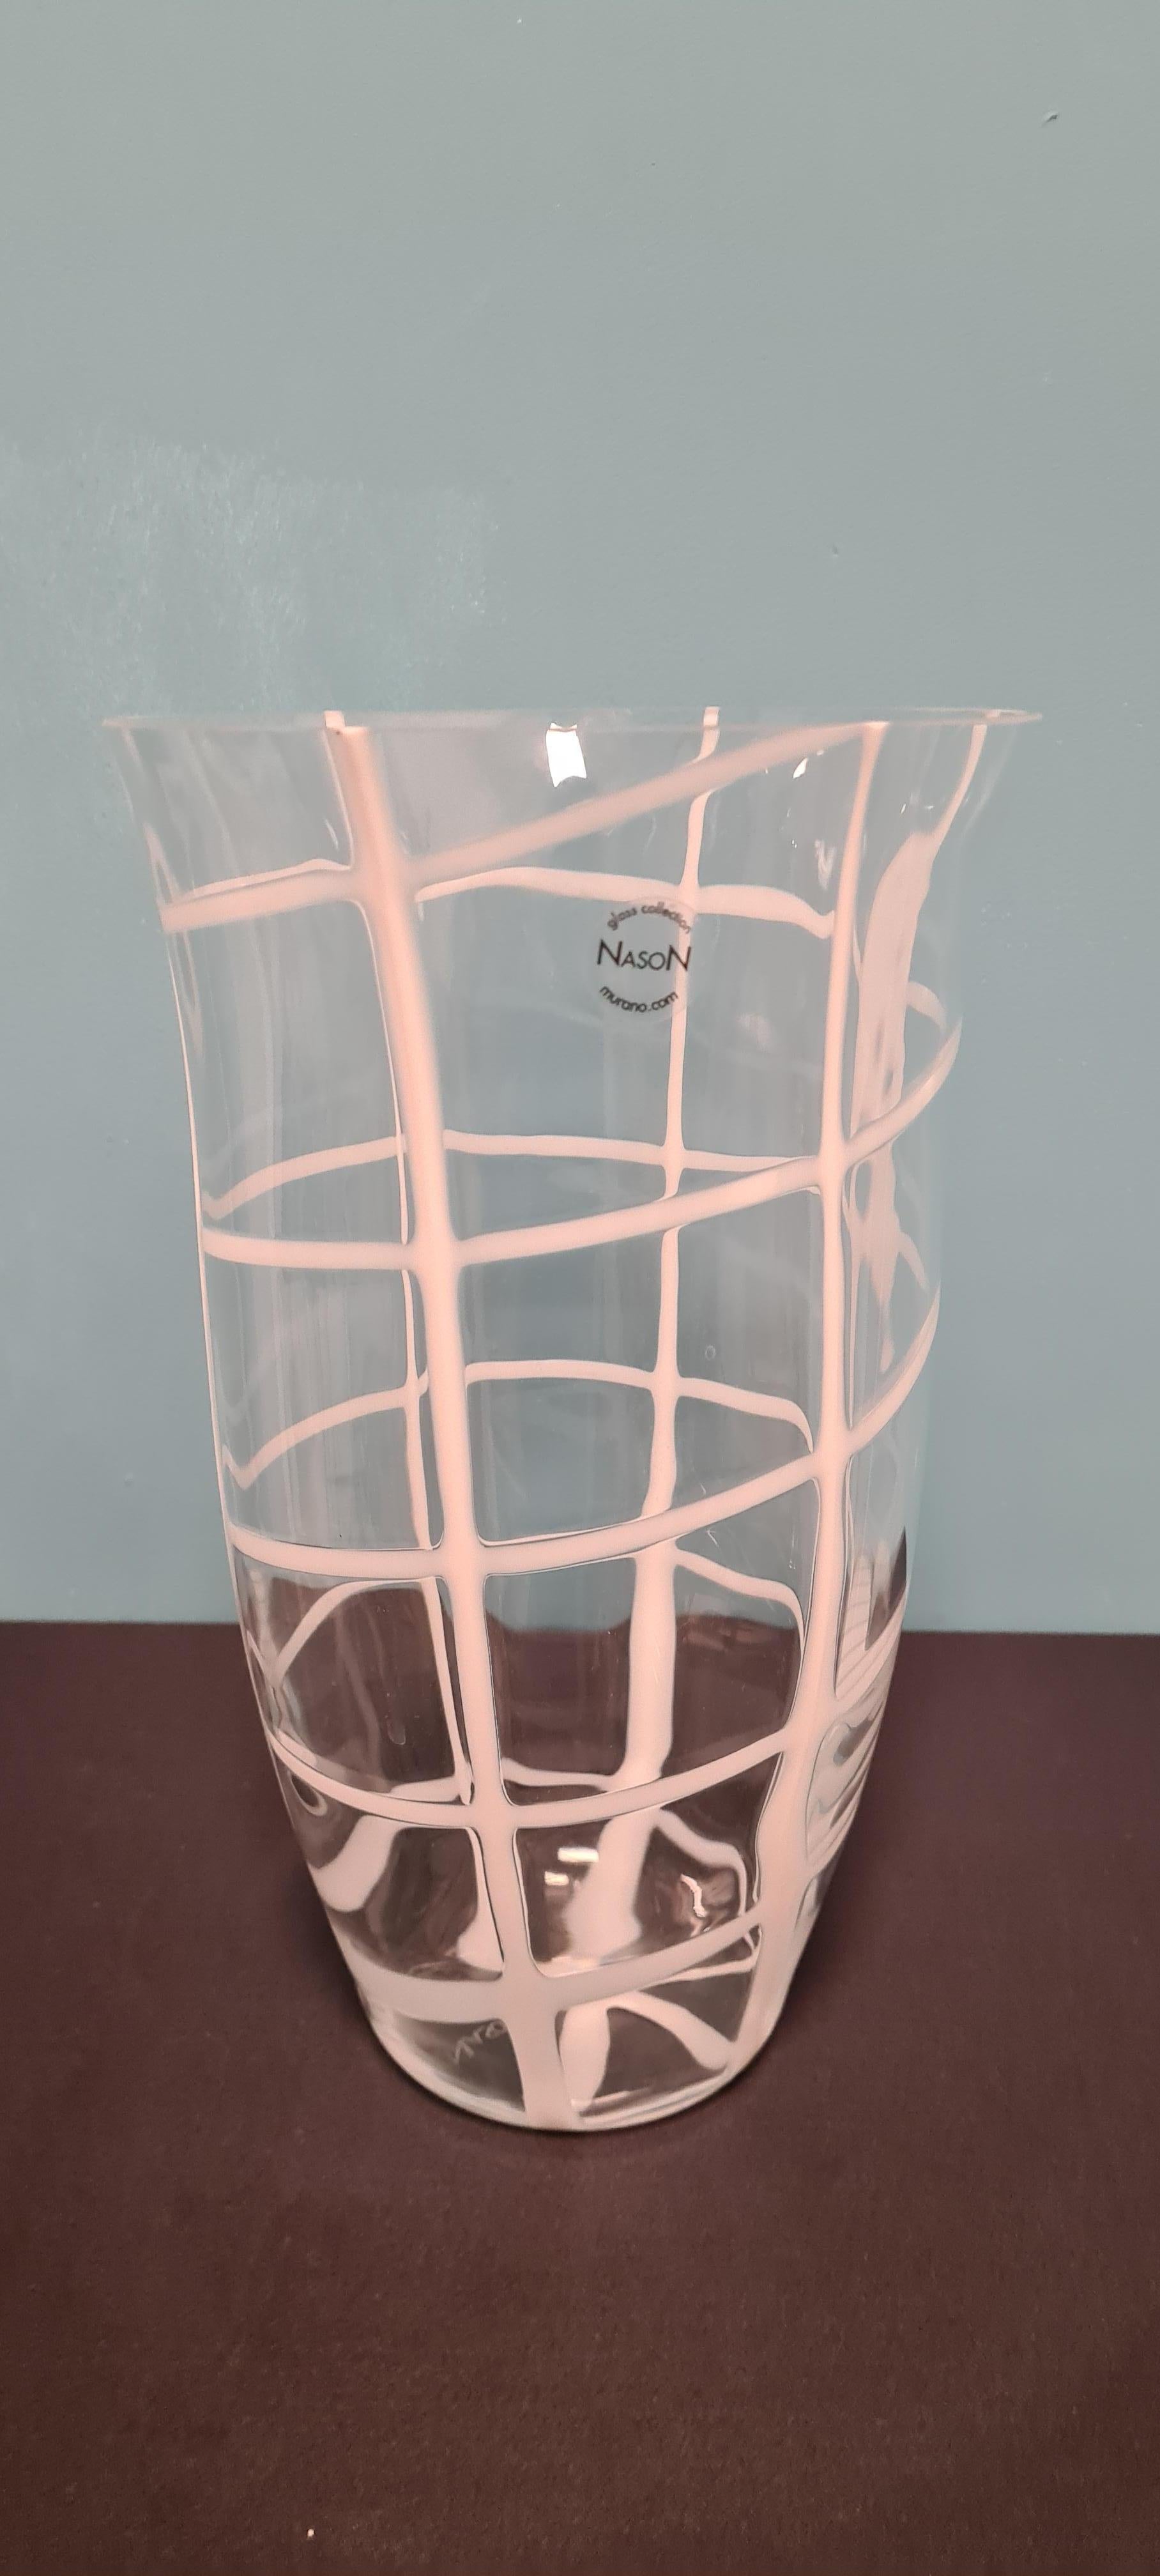 Vaso modello Piombi della vetreria Carlo Nason.

Ispirato al mondo della pesca con la sua forma a piombo circondato da una rete in vetro bianco.

Raffinato ed elegante questo vaso in vetro di murano è l'ideale per decorare i vostri ambienti con